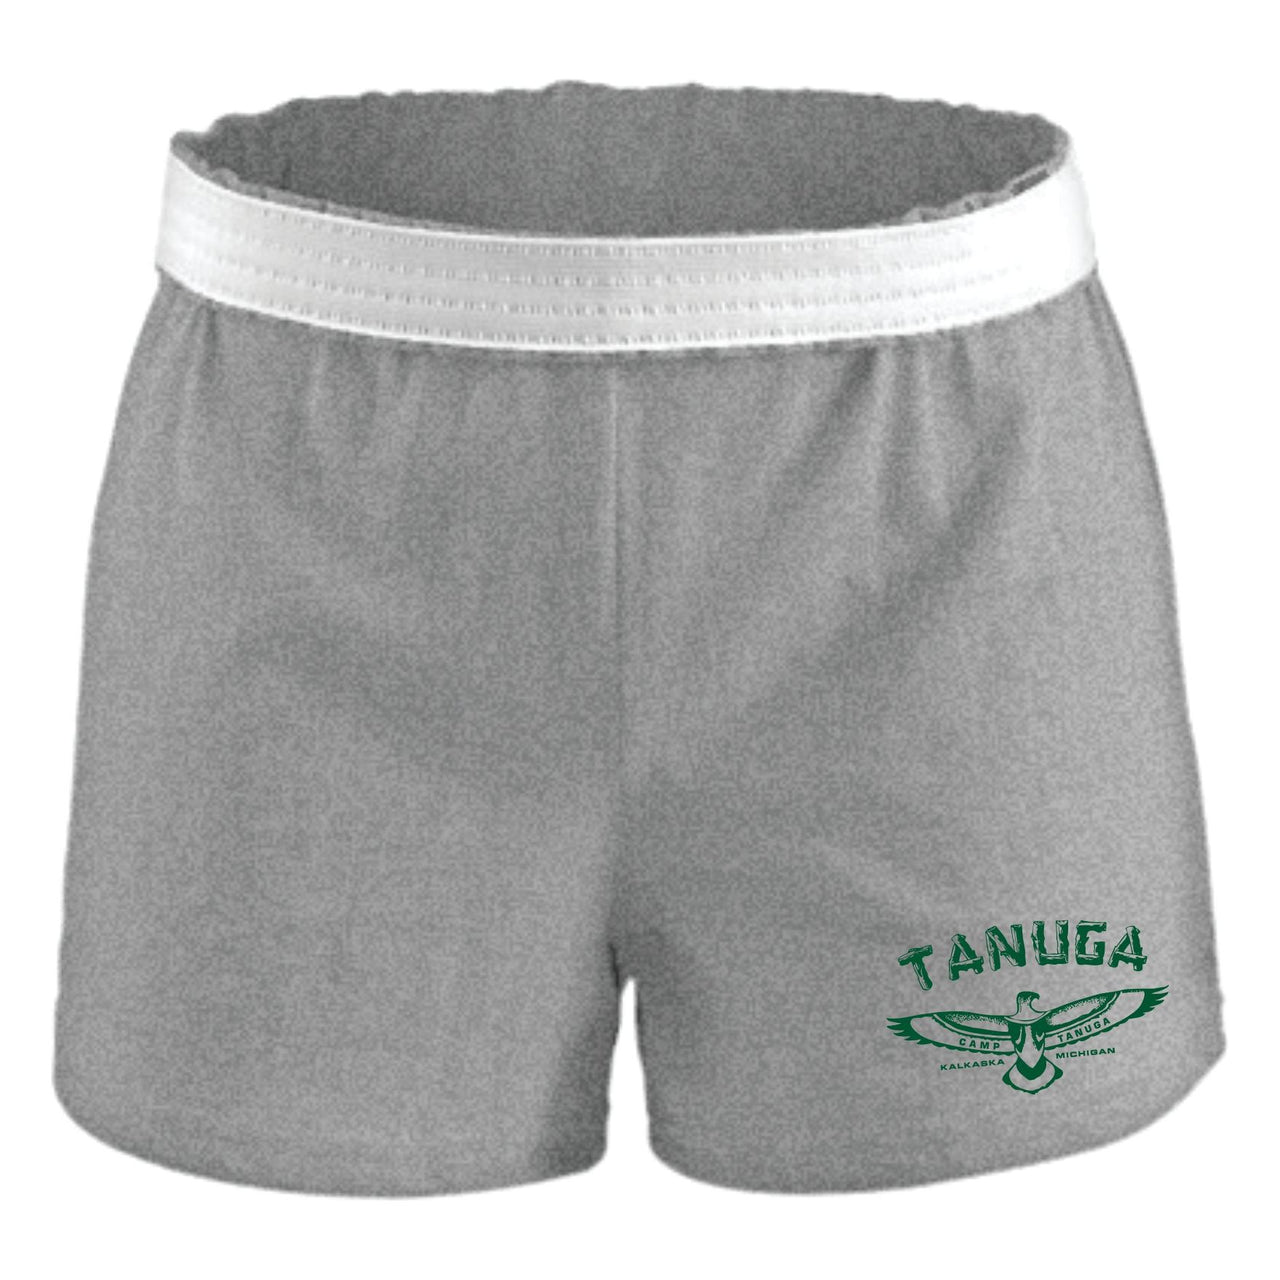 Tanuga Gray  Soffe Shorts